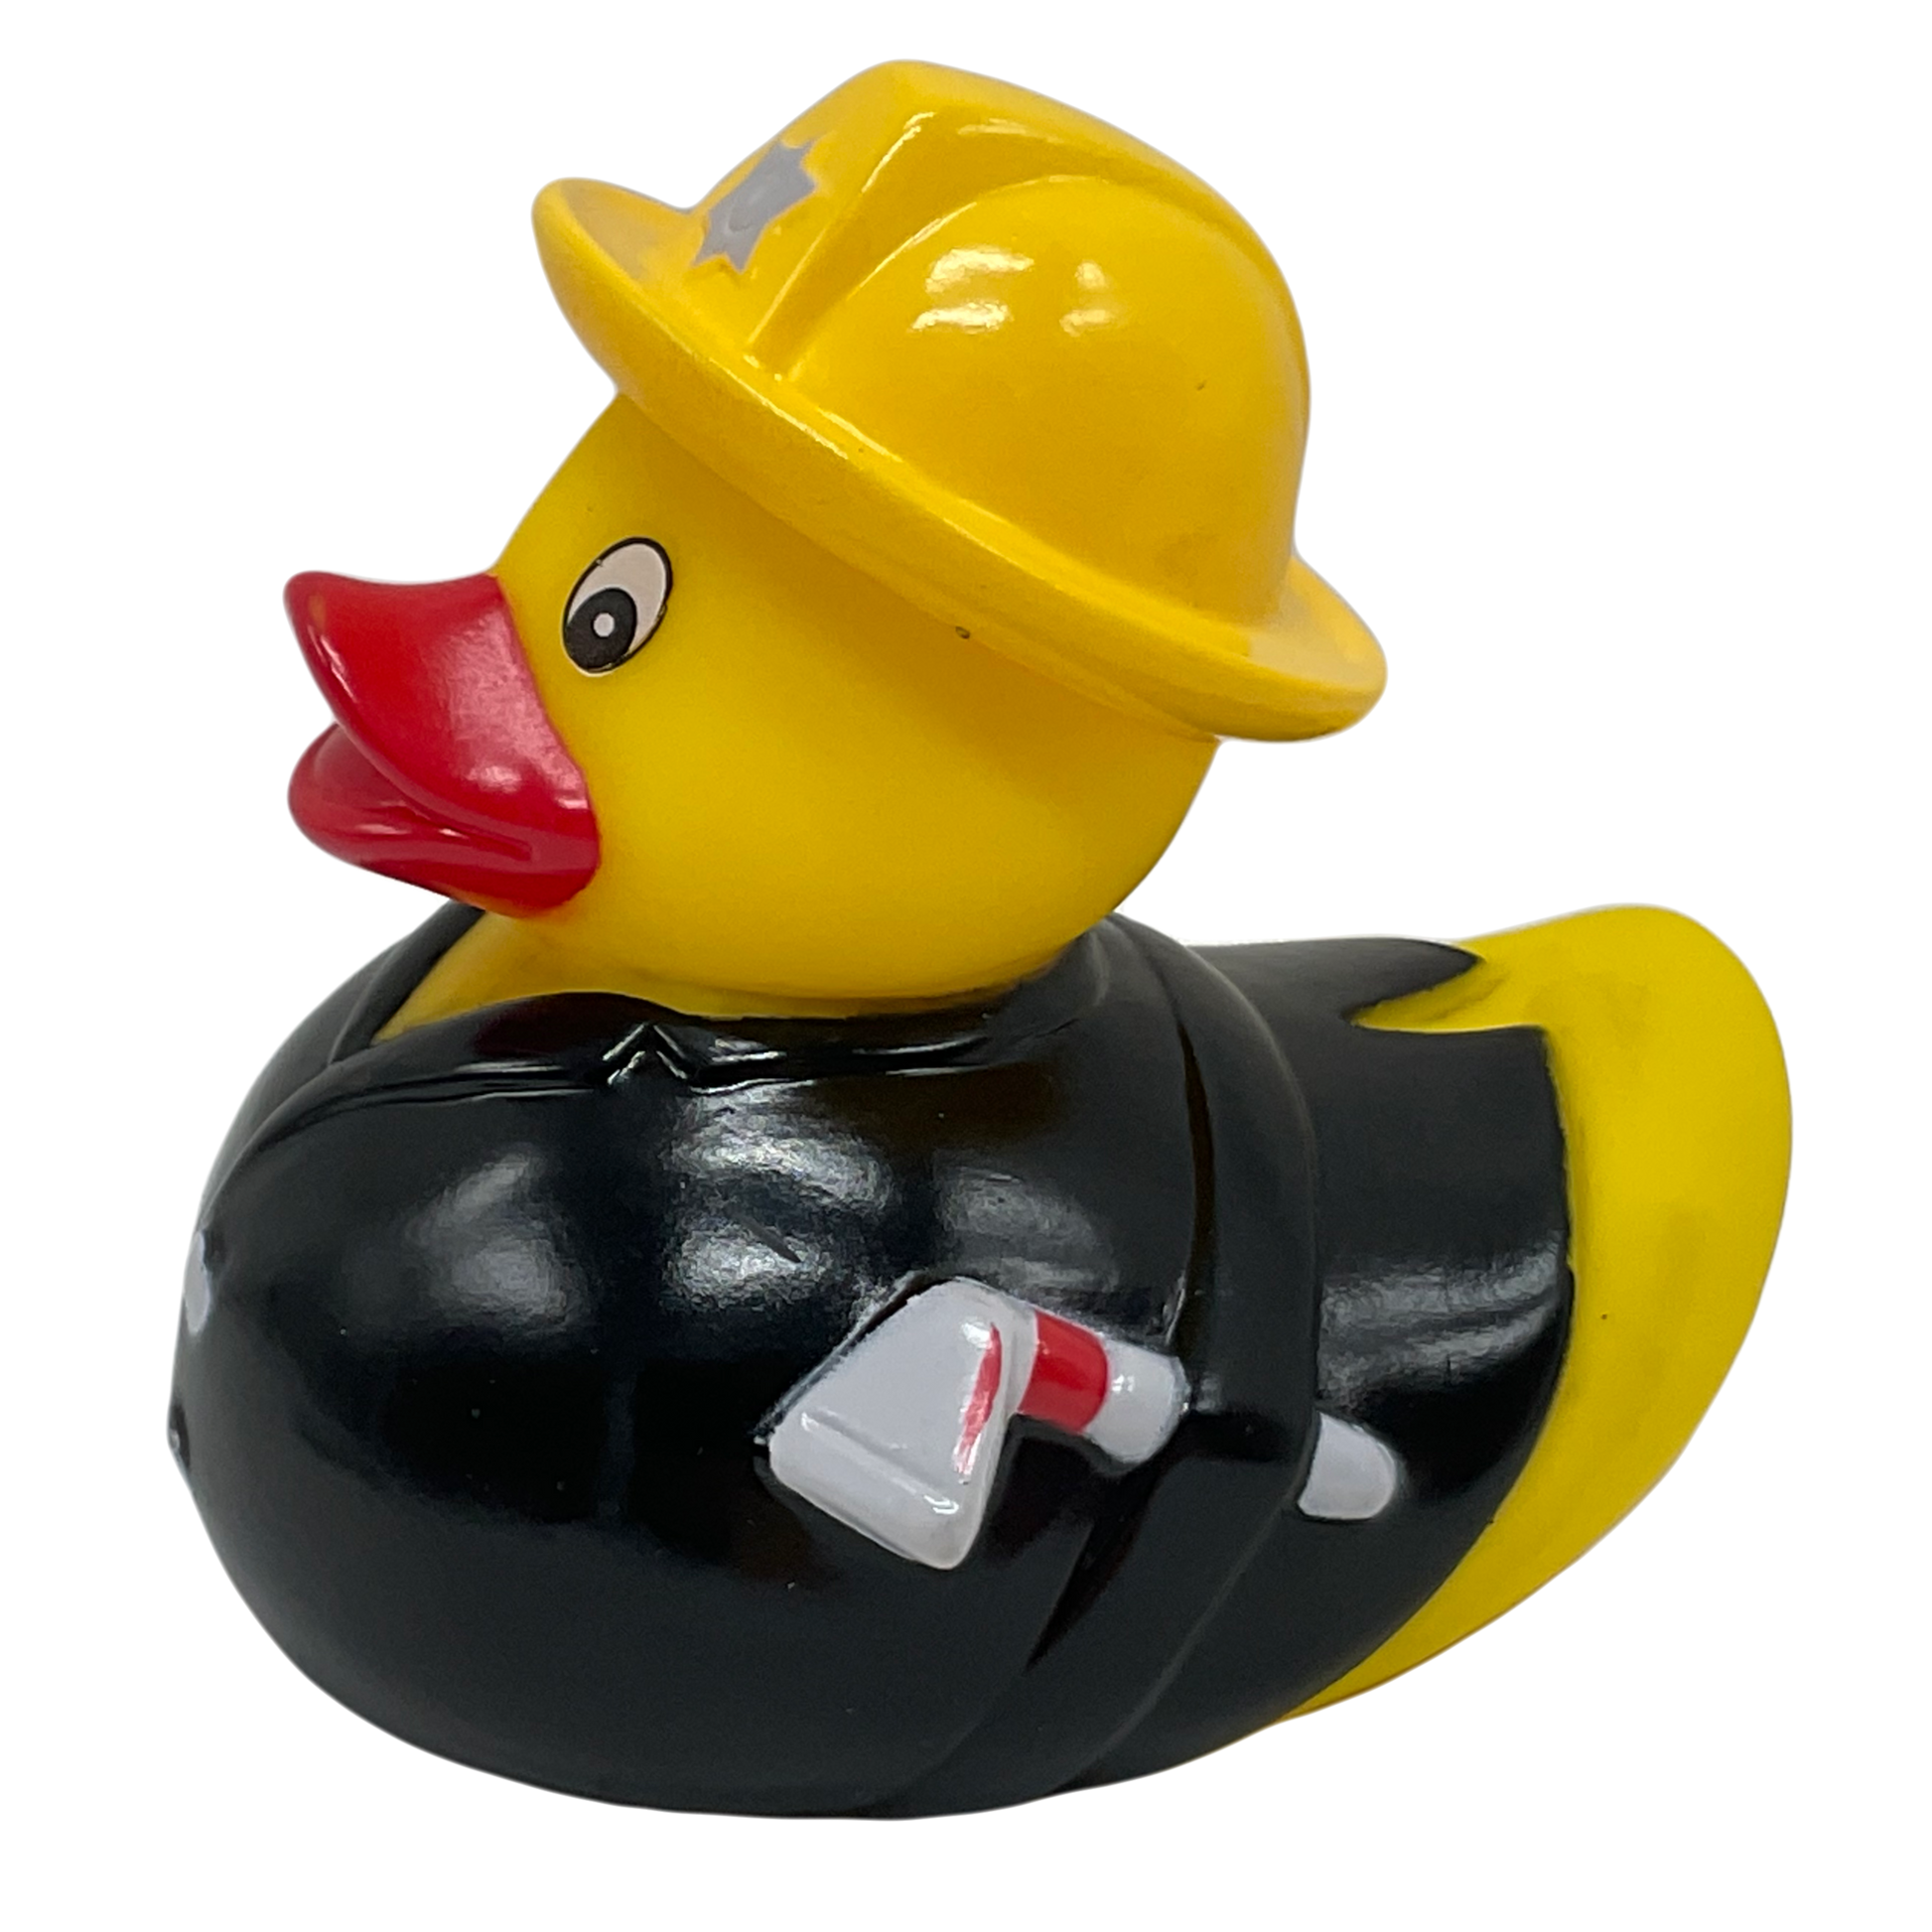 Fireman 4" Rubber Duck